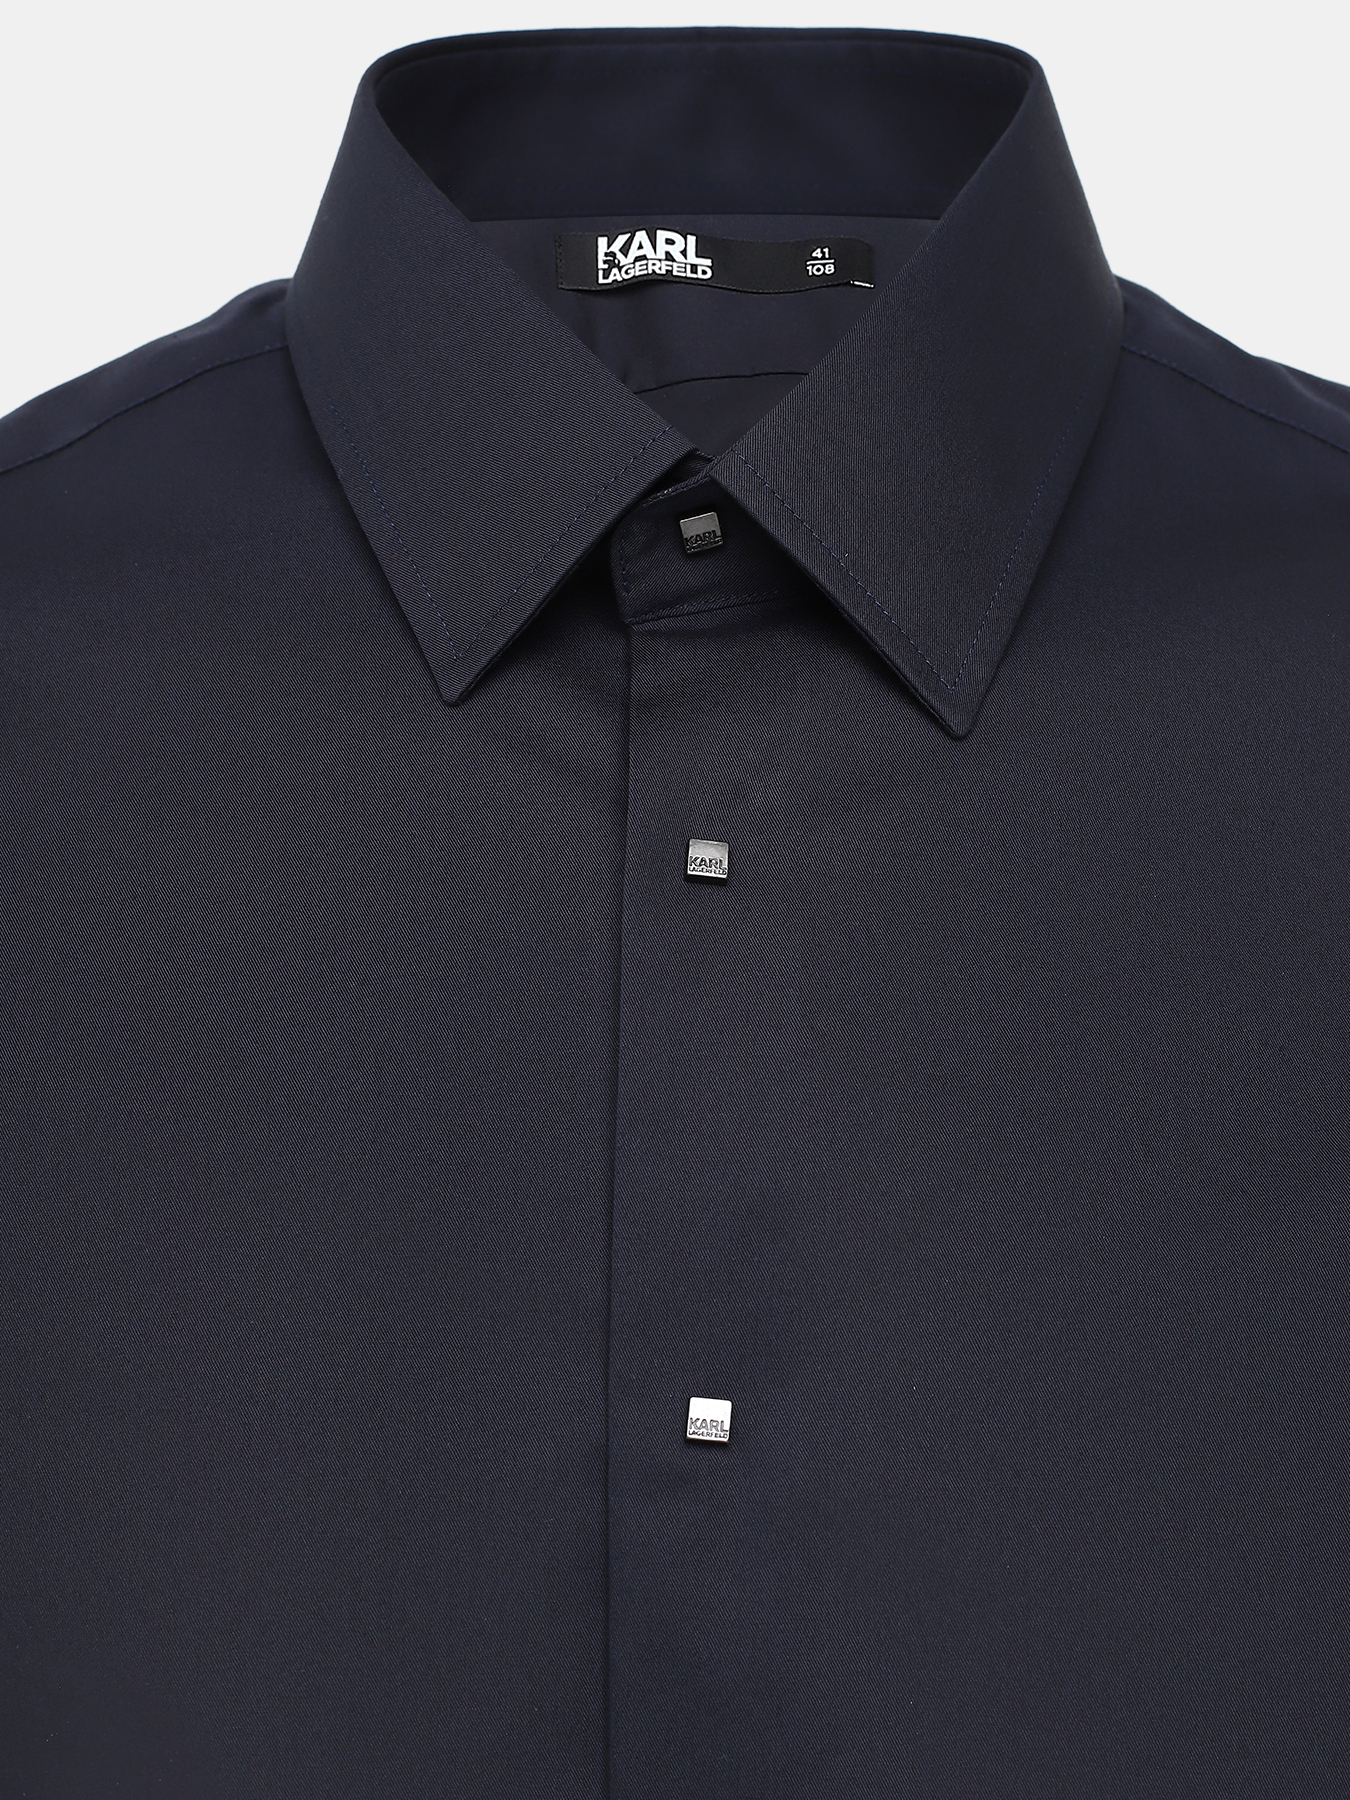 Рубашка Karl Lagerfeld 431011-049, цвет темно-синий, размер 48 - фото 3